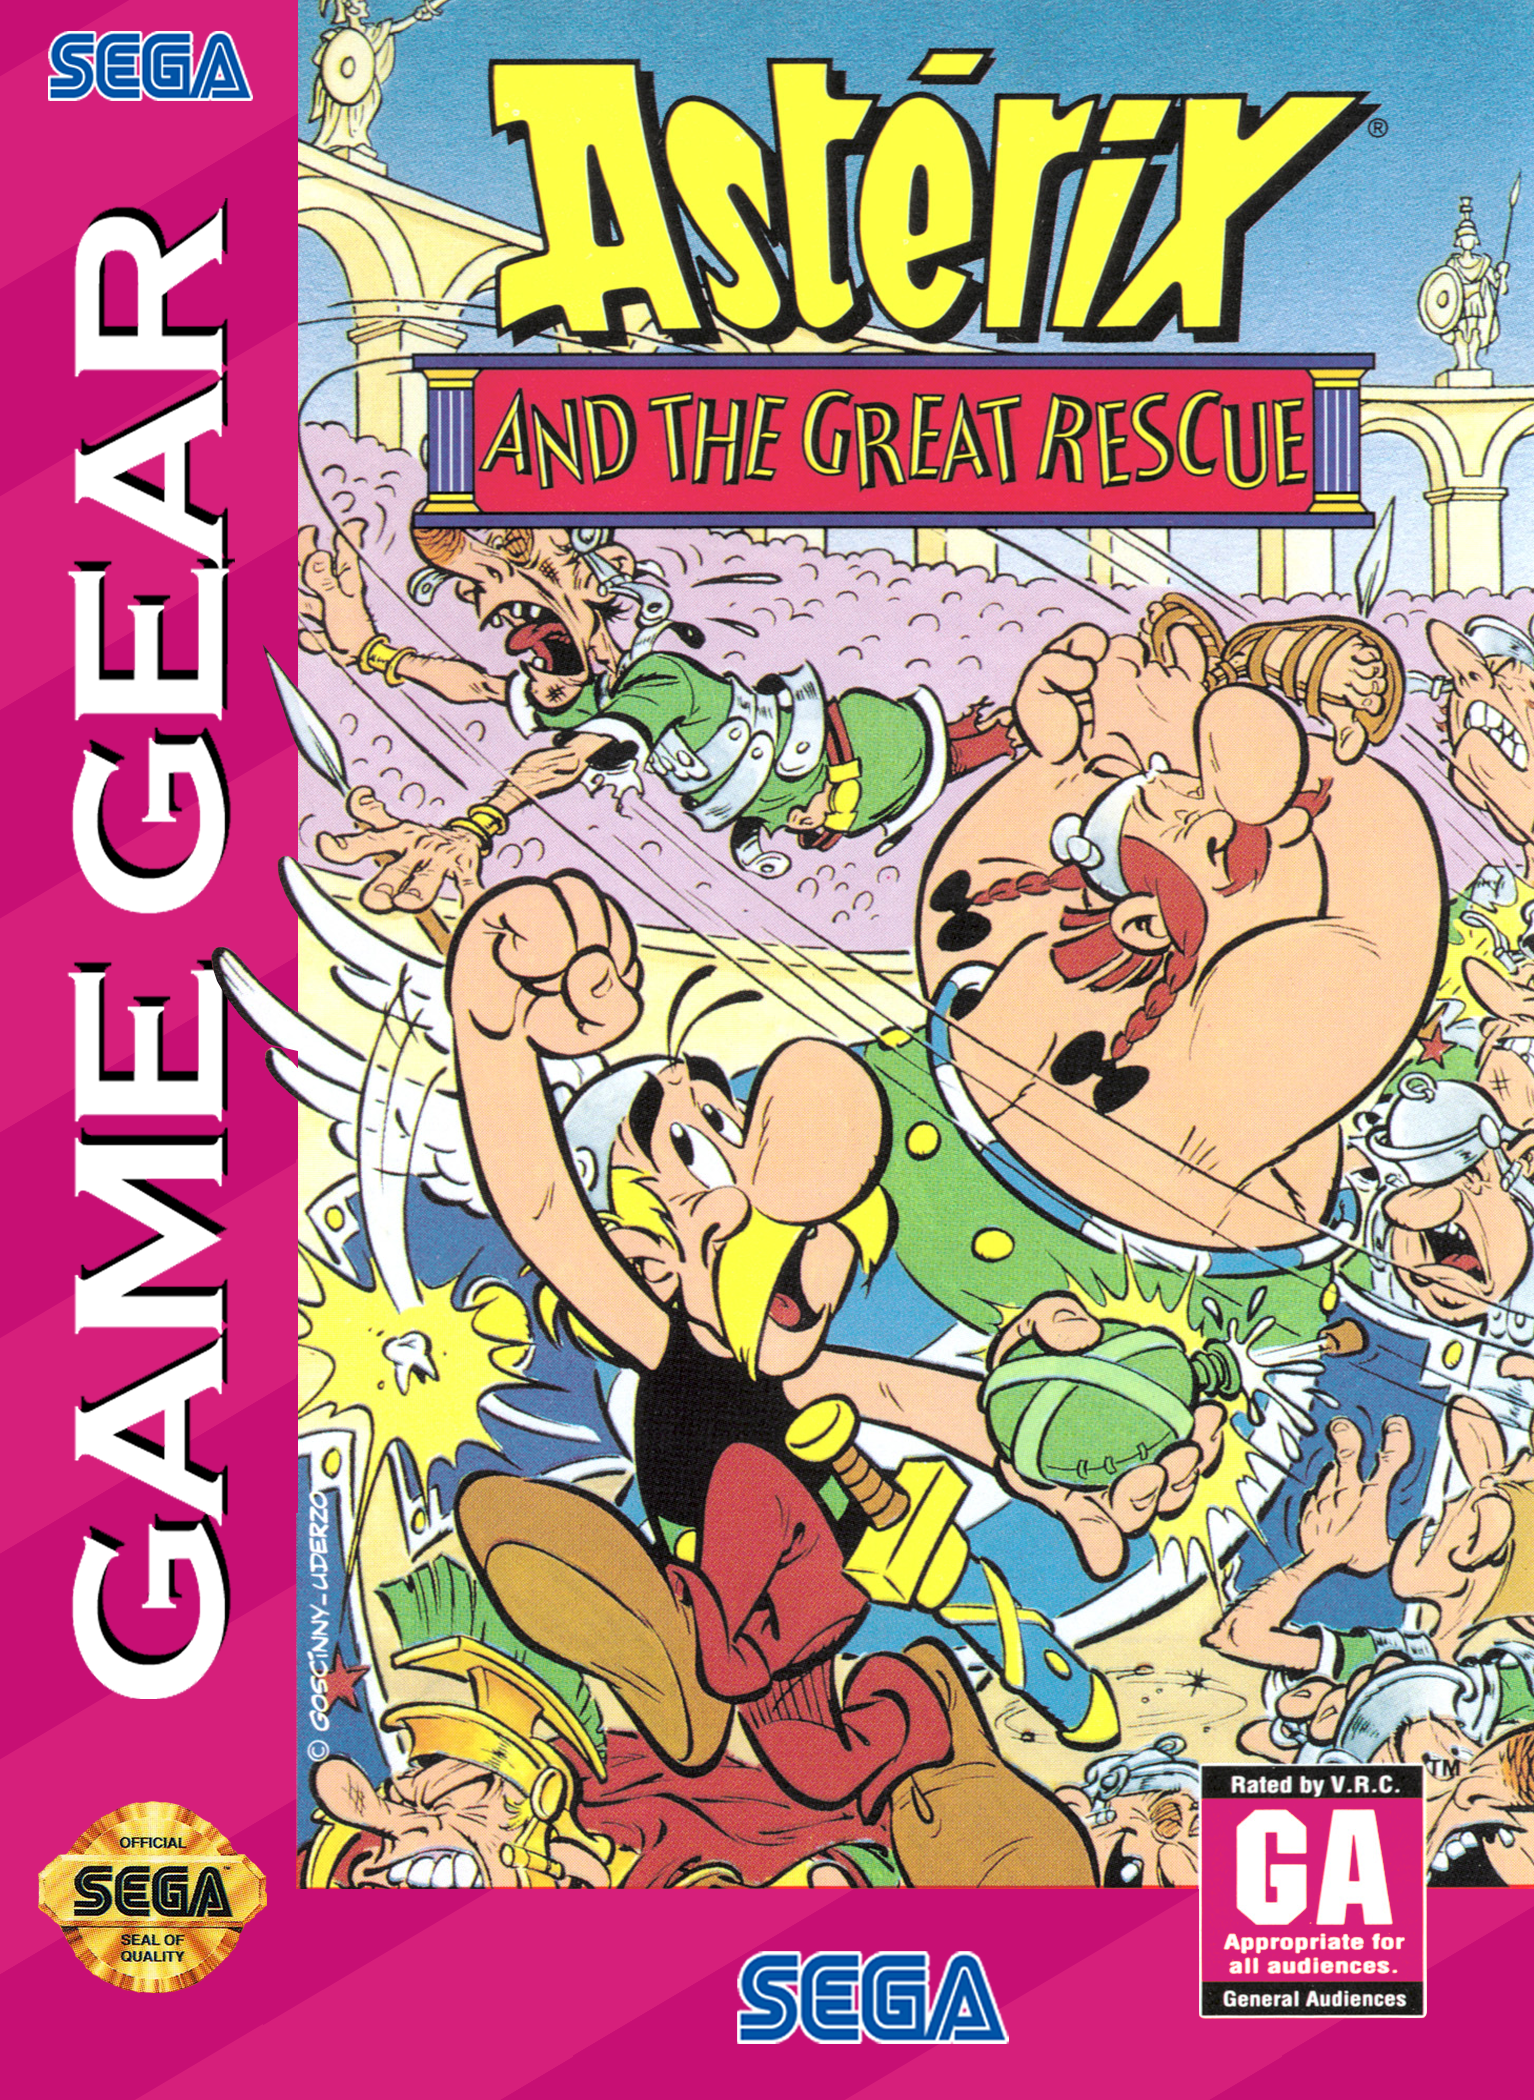 割引クーポン配布中!! Asterix and the Great Rescue【美品・SMS欧州版